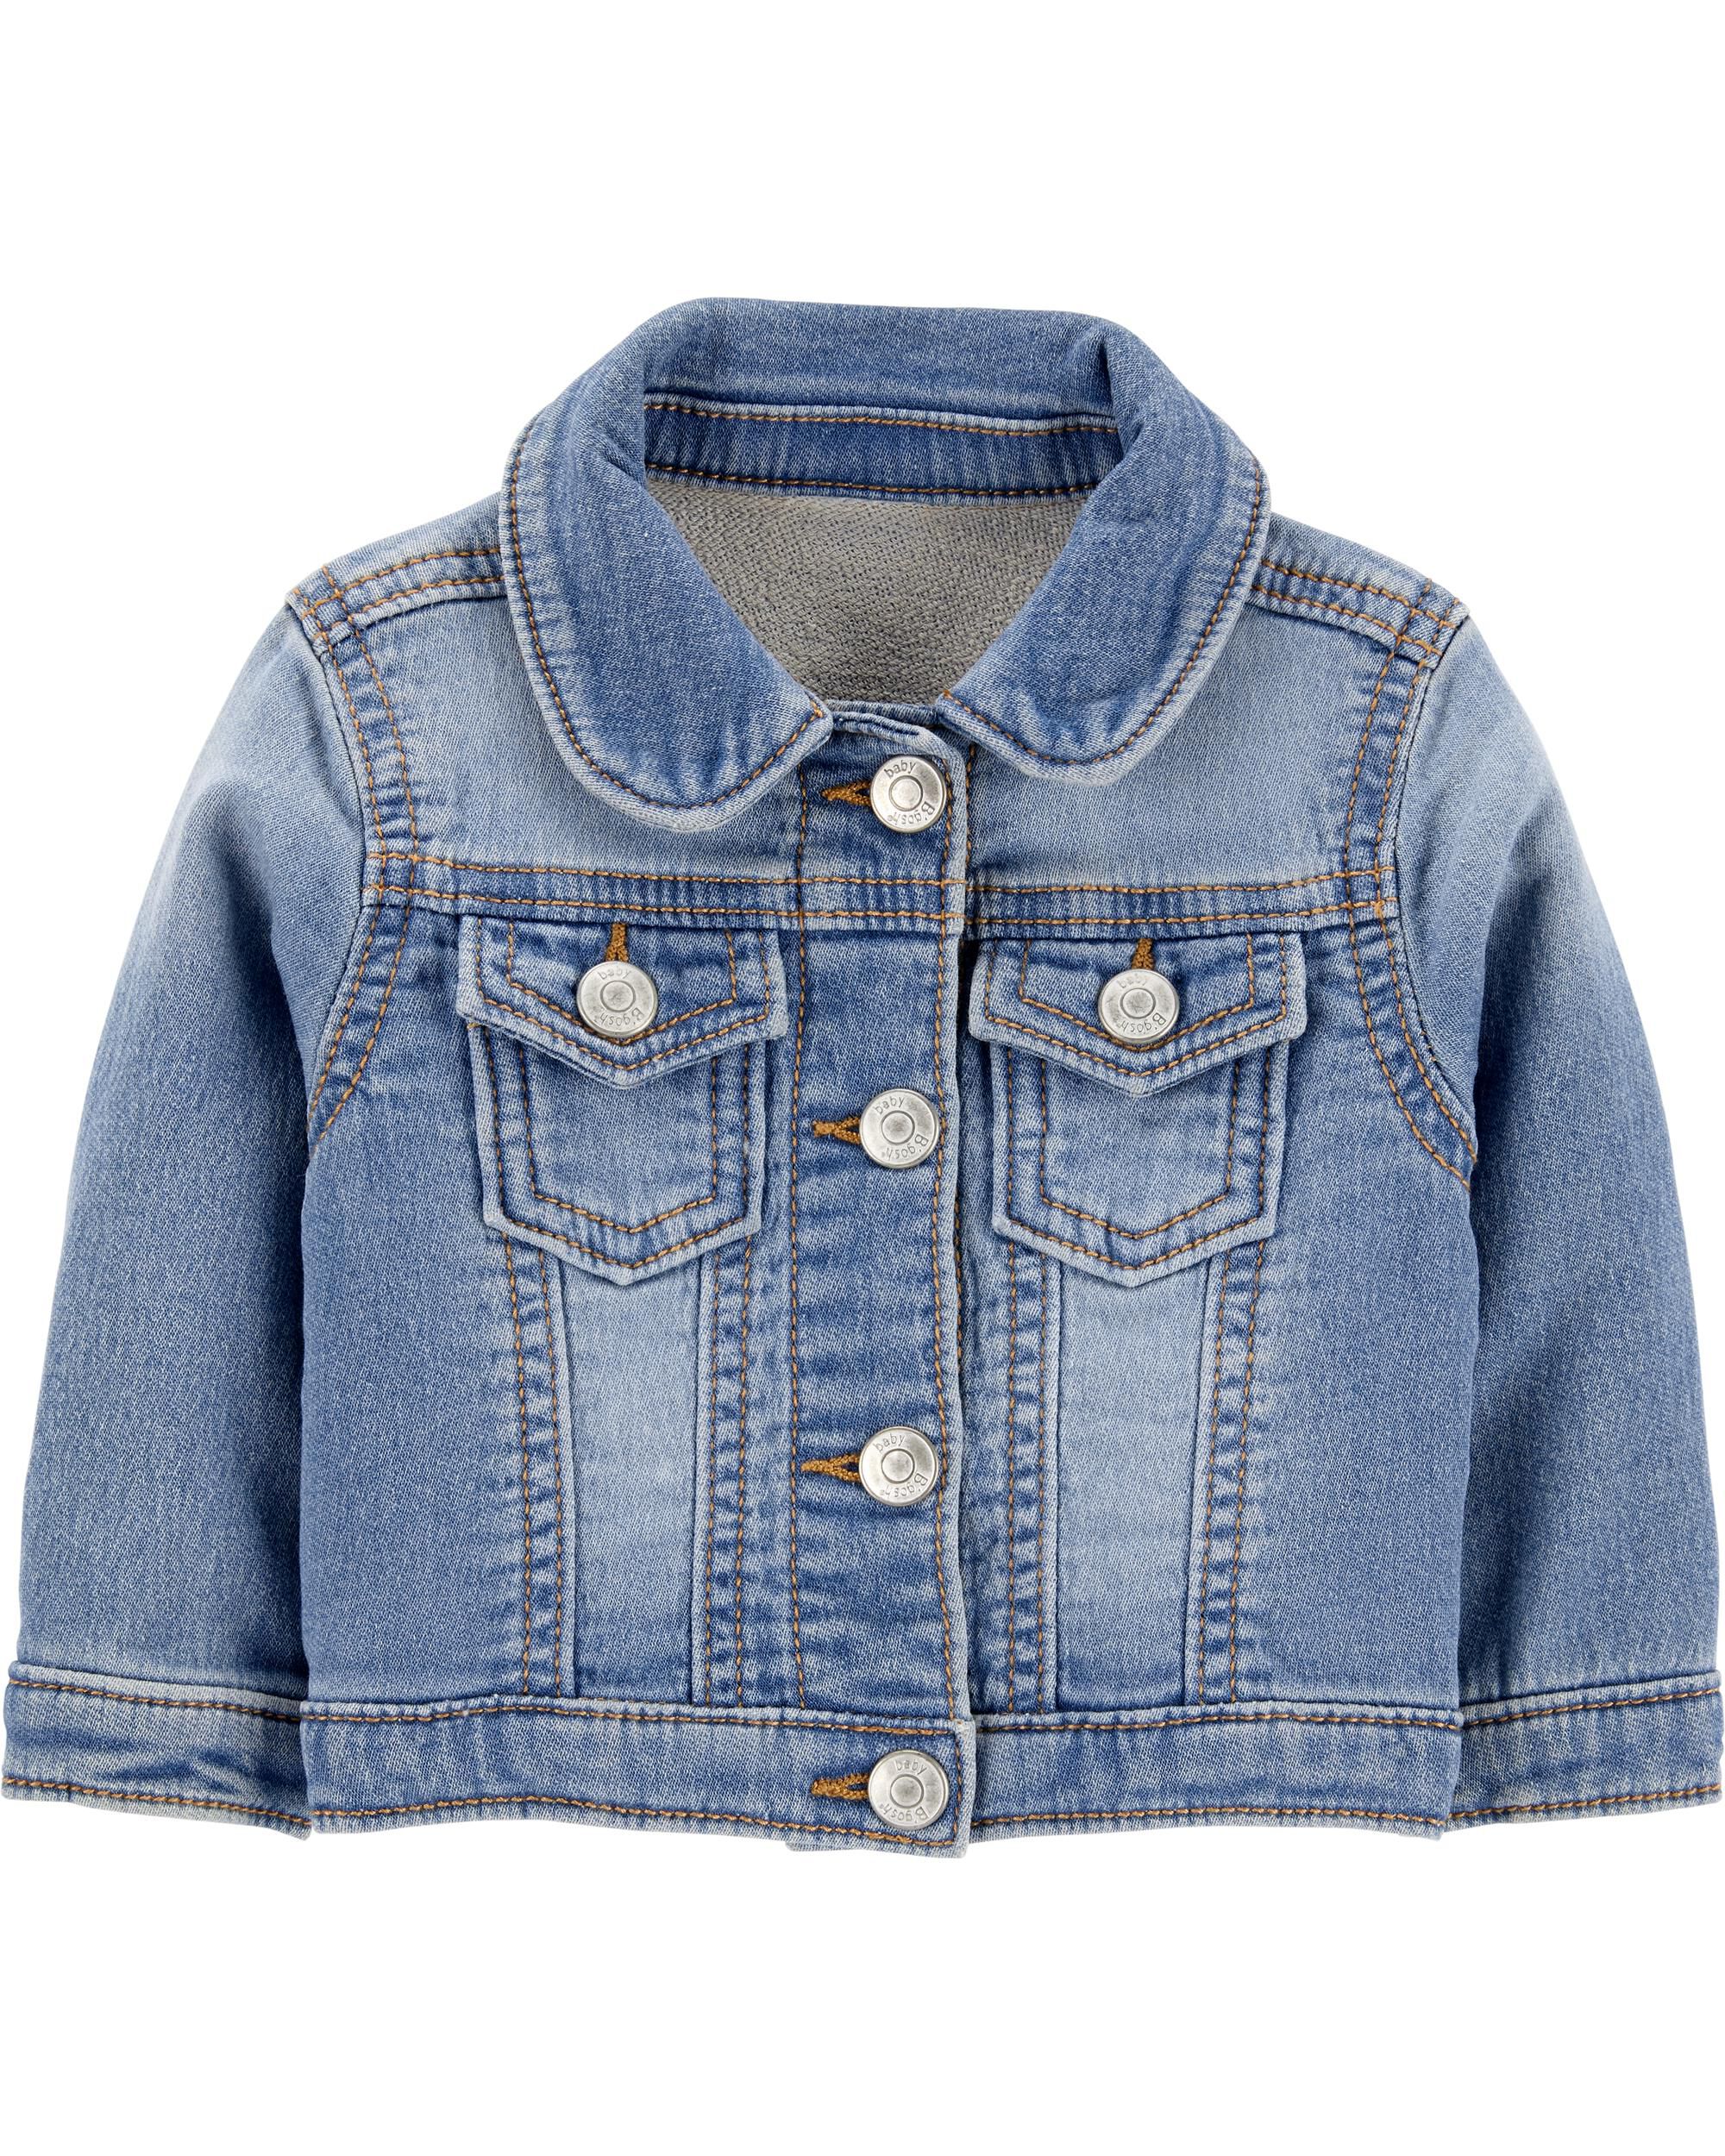 infant girl jacket